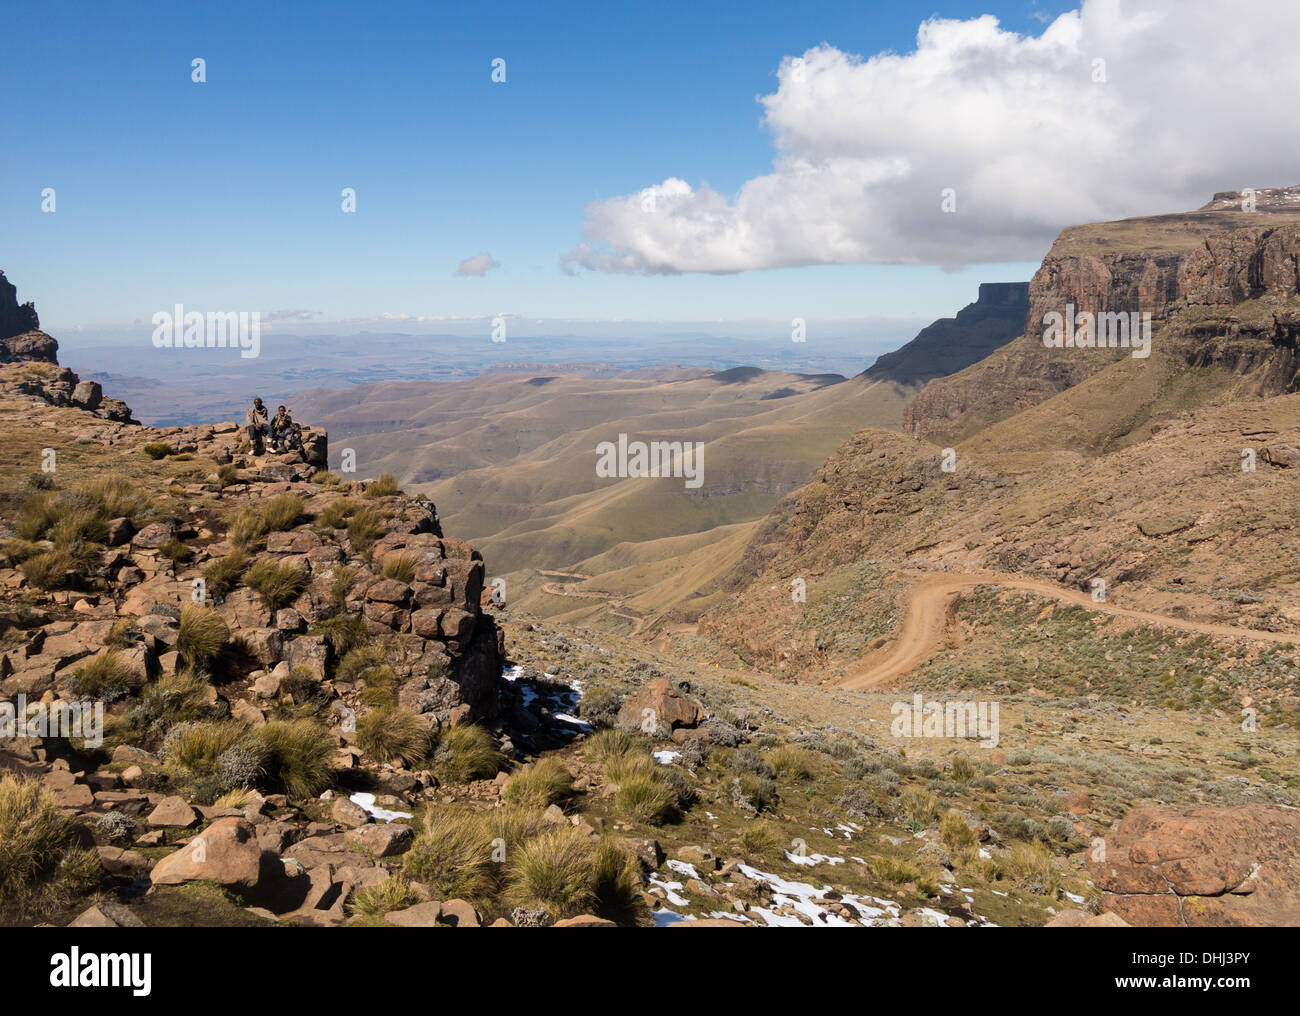 Afrika Landschaft - Sani Pass Lesotho, South Africa.Two afrikanischen jungen sitzen über das Tal und kurvenreiche Straße Stockfoto